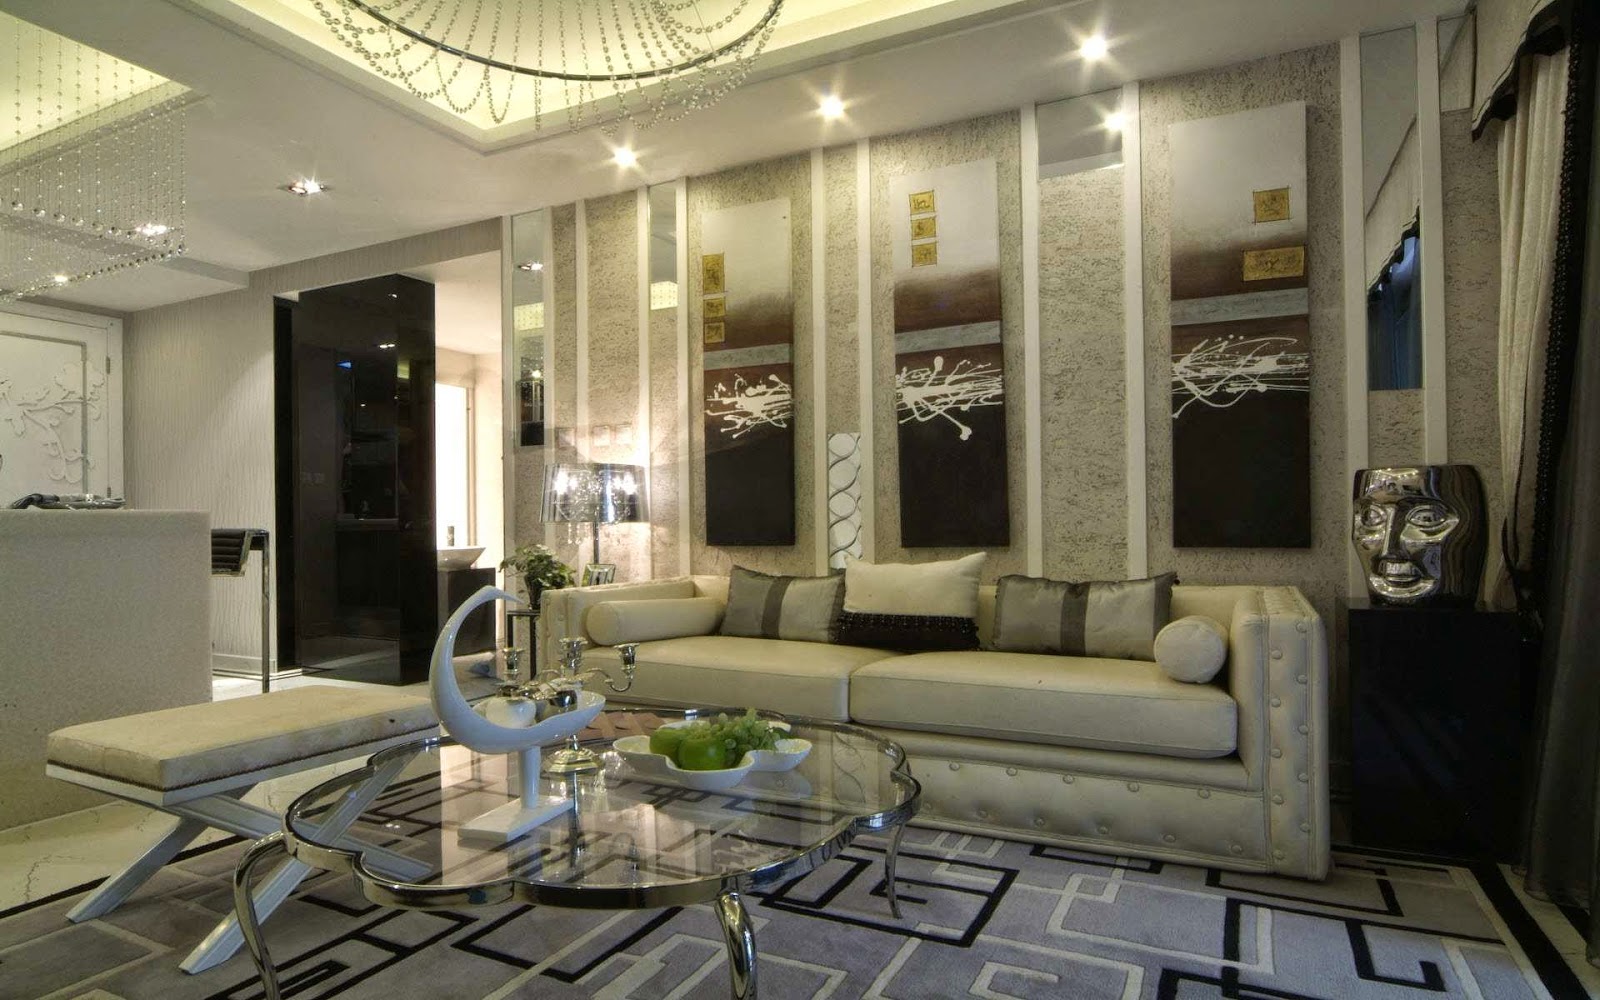 Modern Living Room Furniture Decoration